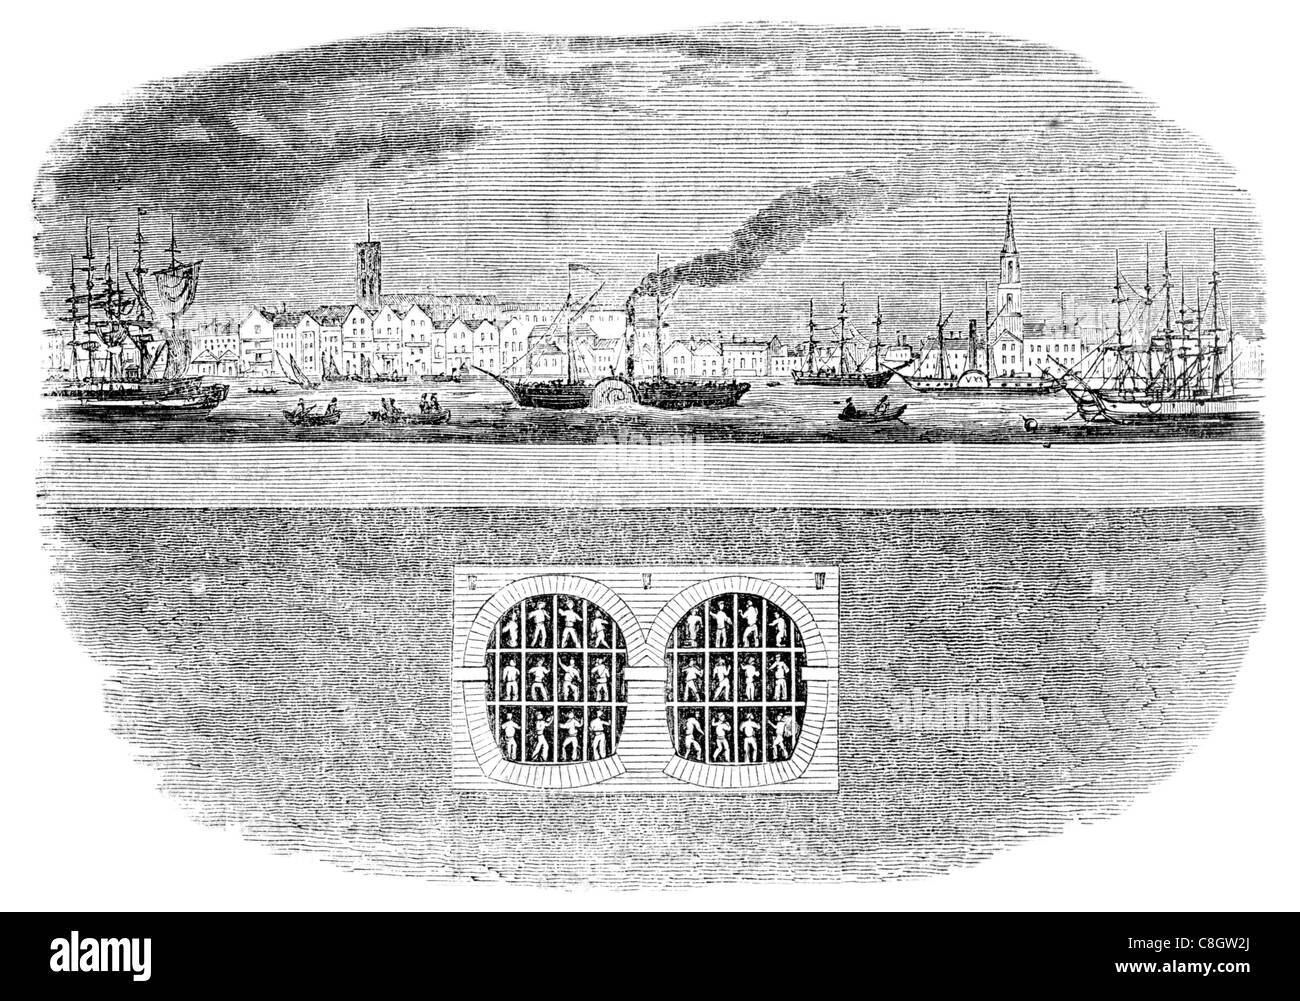 Aushub der Baugrube River Thames Tunnel Unterwasser London Vereinigtes Königreich Rotherhithe Wapping Isambard Brunel Stockfoto